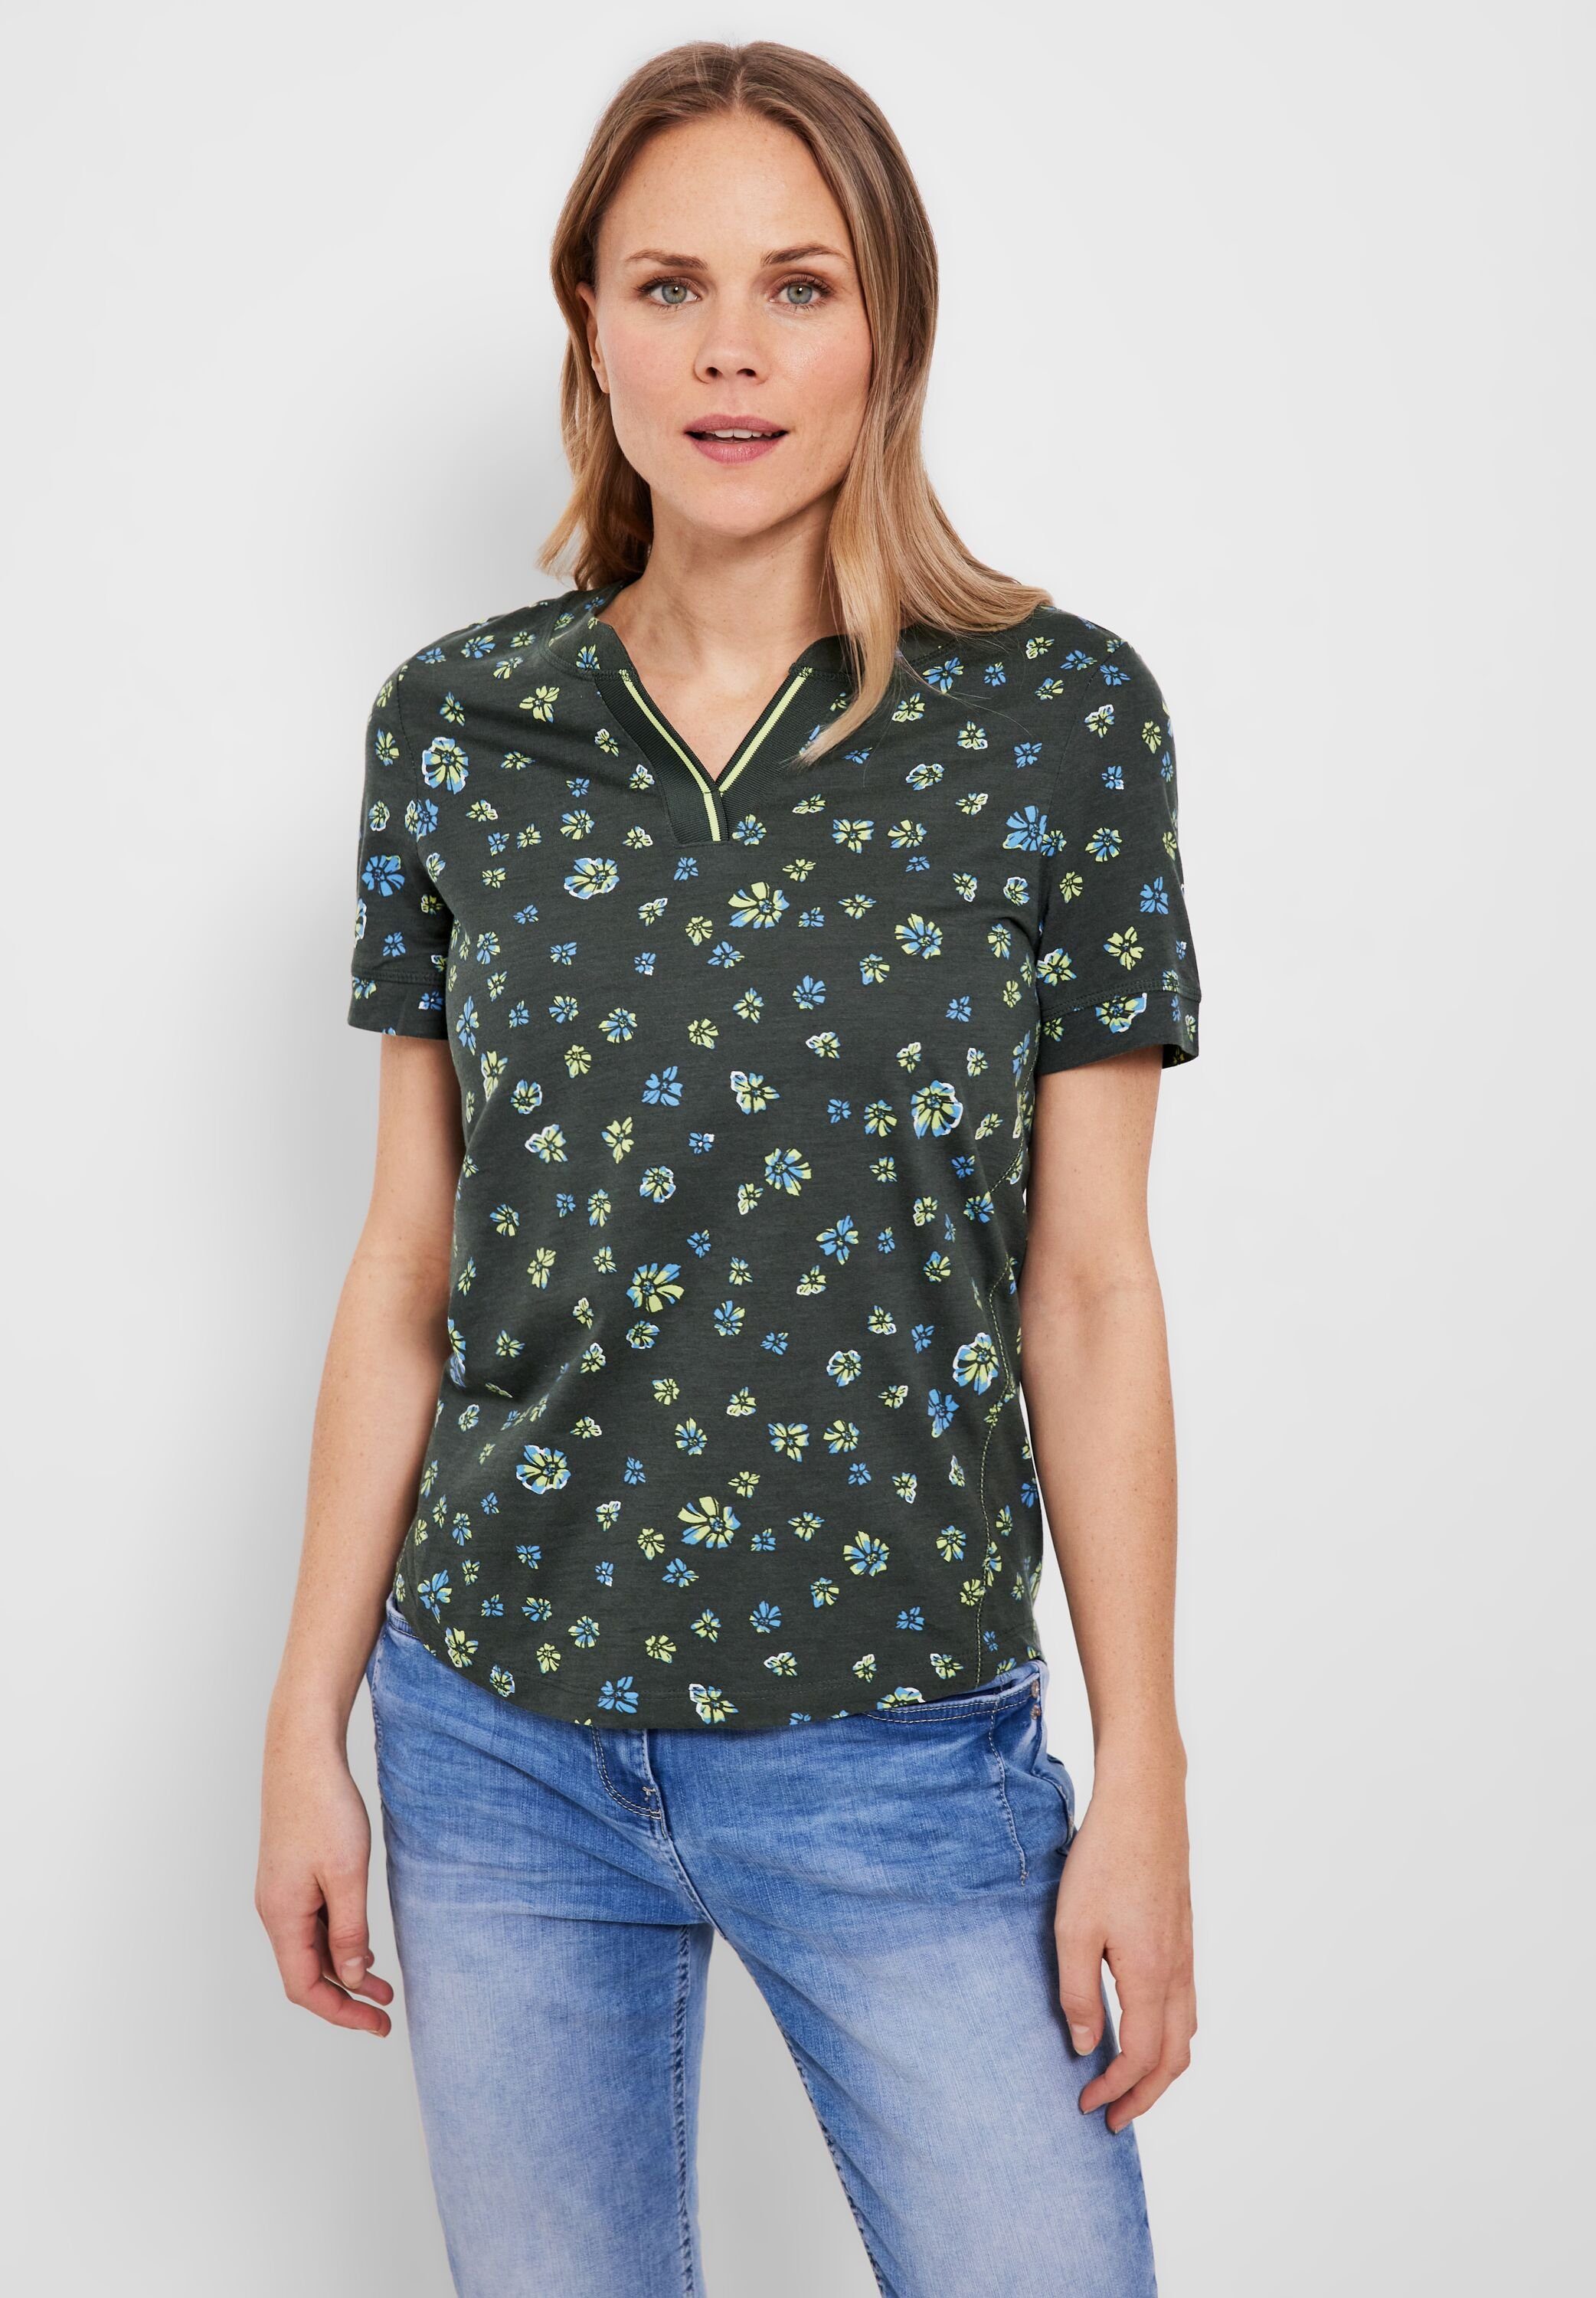 Cecil T-Shirt mit Ausschnitt am Rundhalsausschnitt, geschlitztem Kontraststreifen